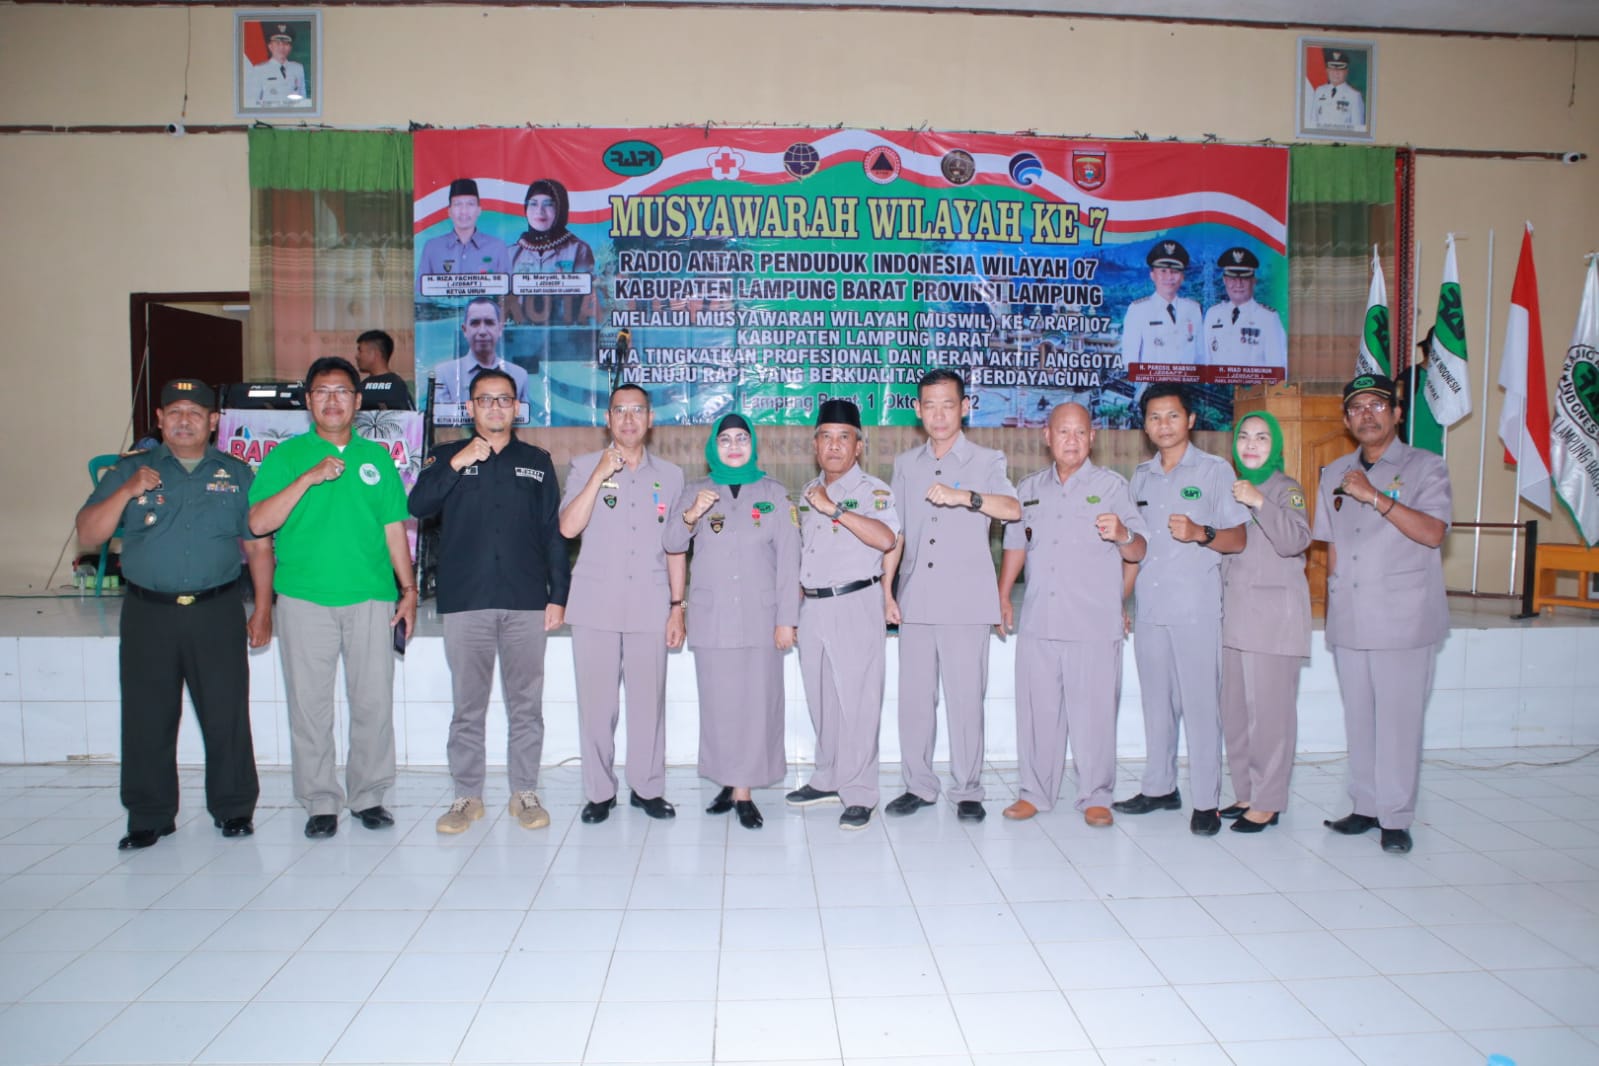 RAPI Wilayah VII Lampung Barat Gelar Muswil